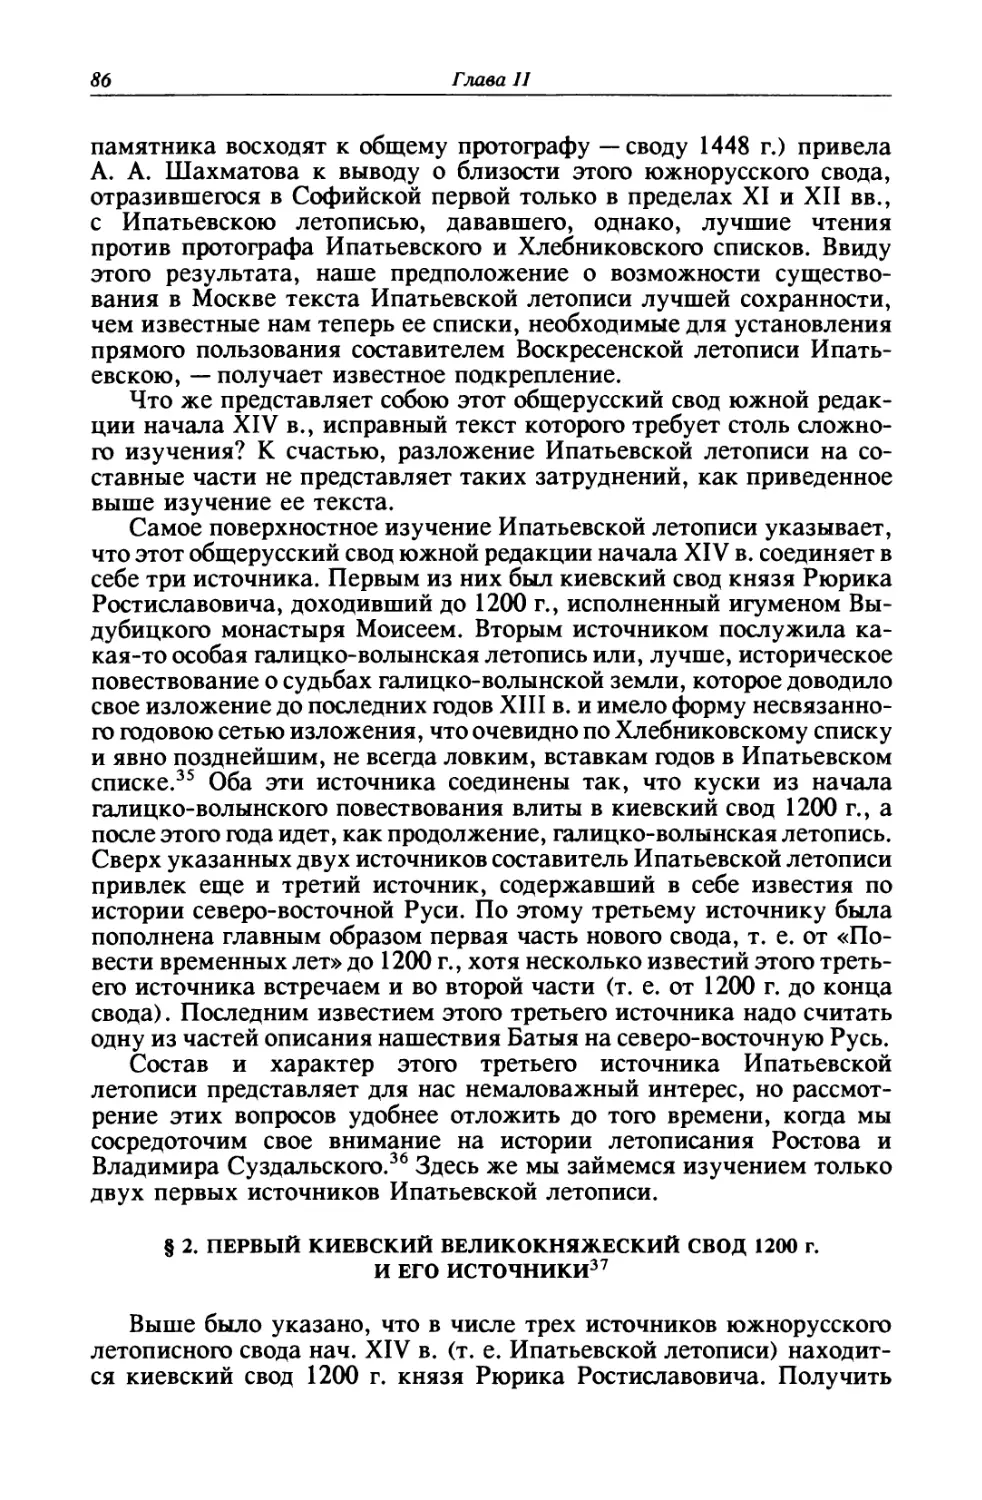 § 2. Первый киевский великокняжеский свод 1200 г. и его источники